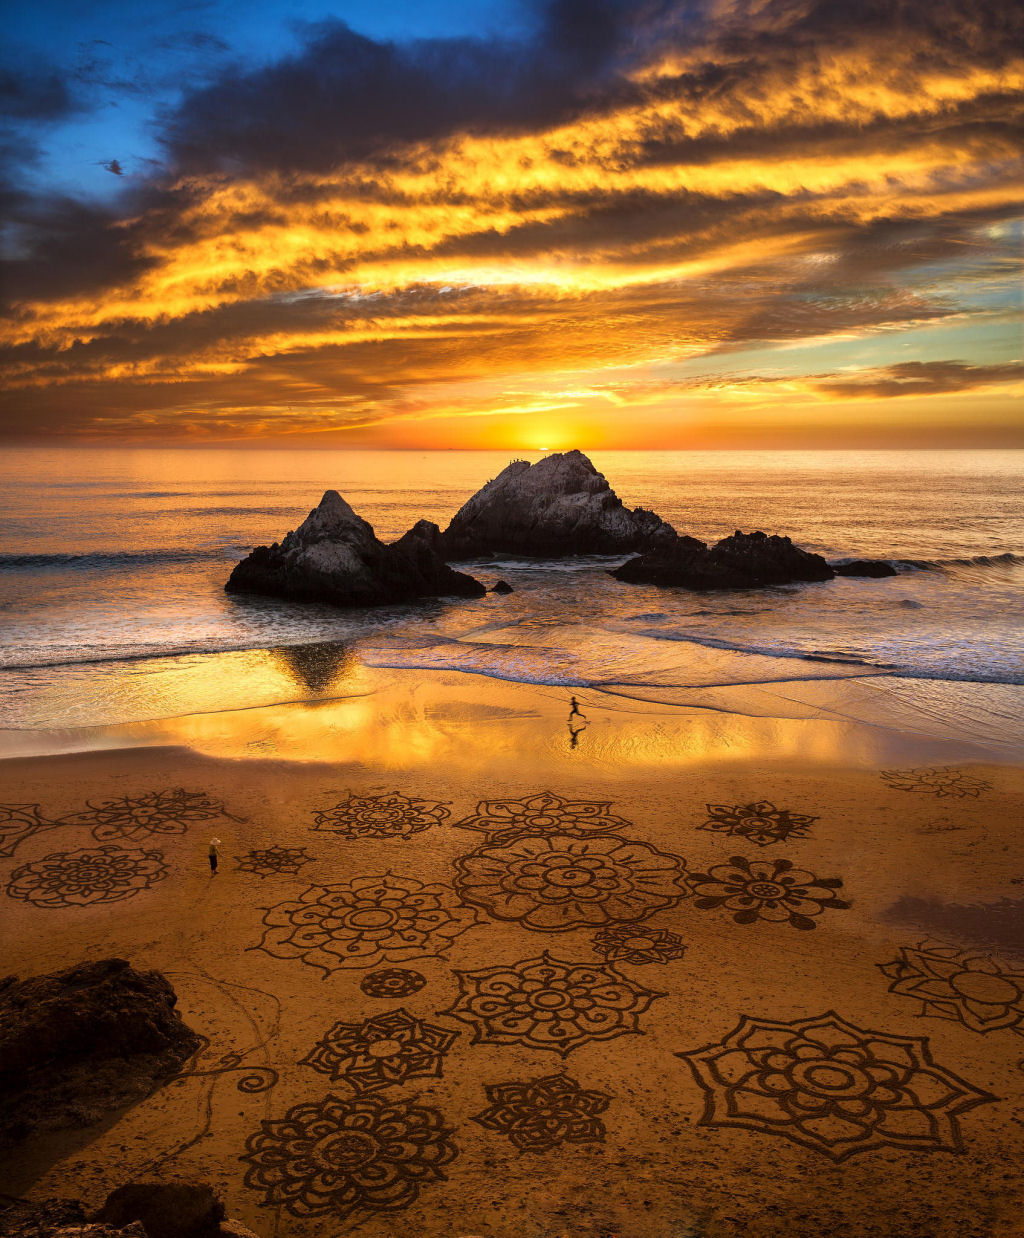 Arte na areia.